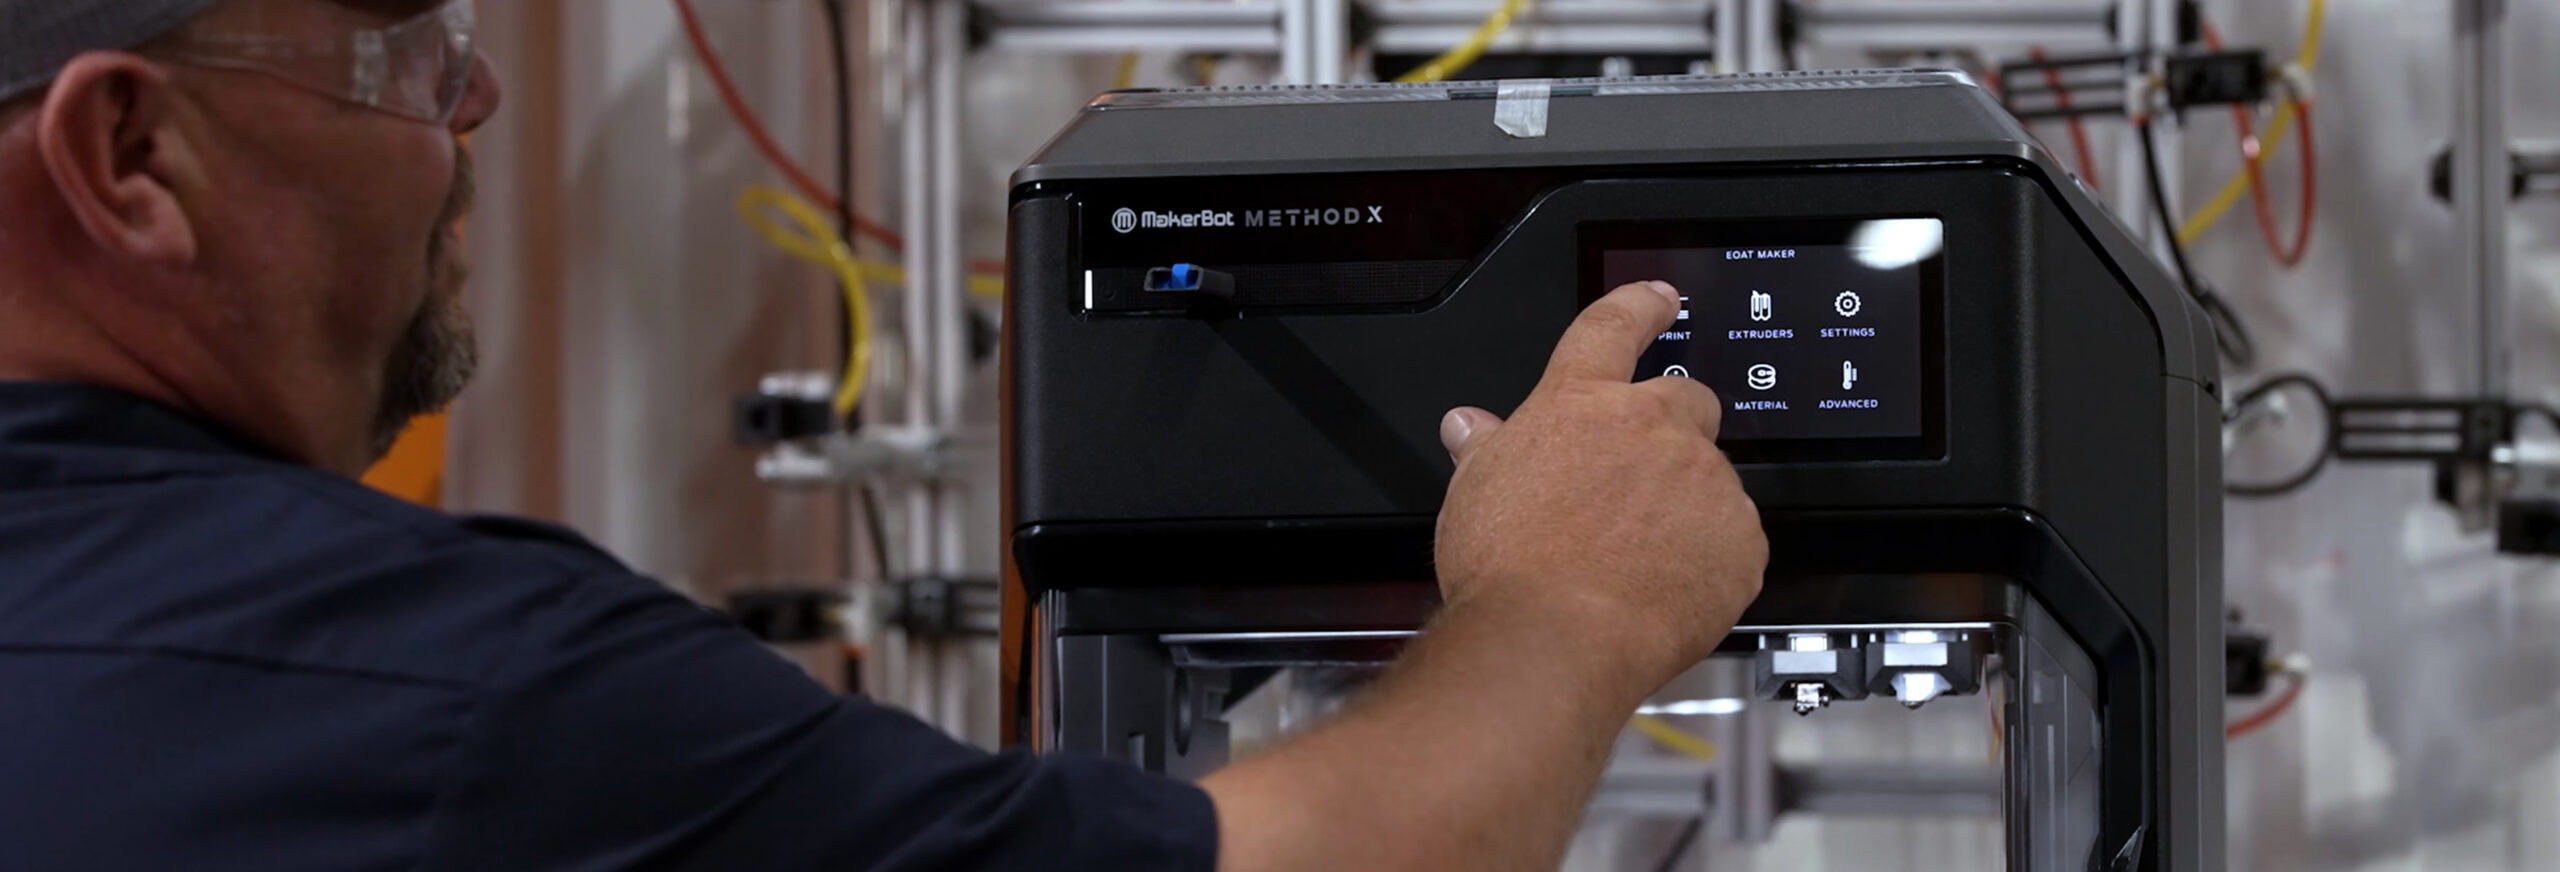 North American Lighting acelera la producción de ensamblaje con las impresoras Makerbot